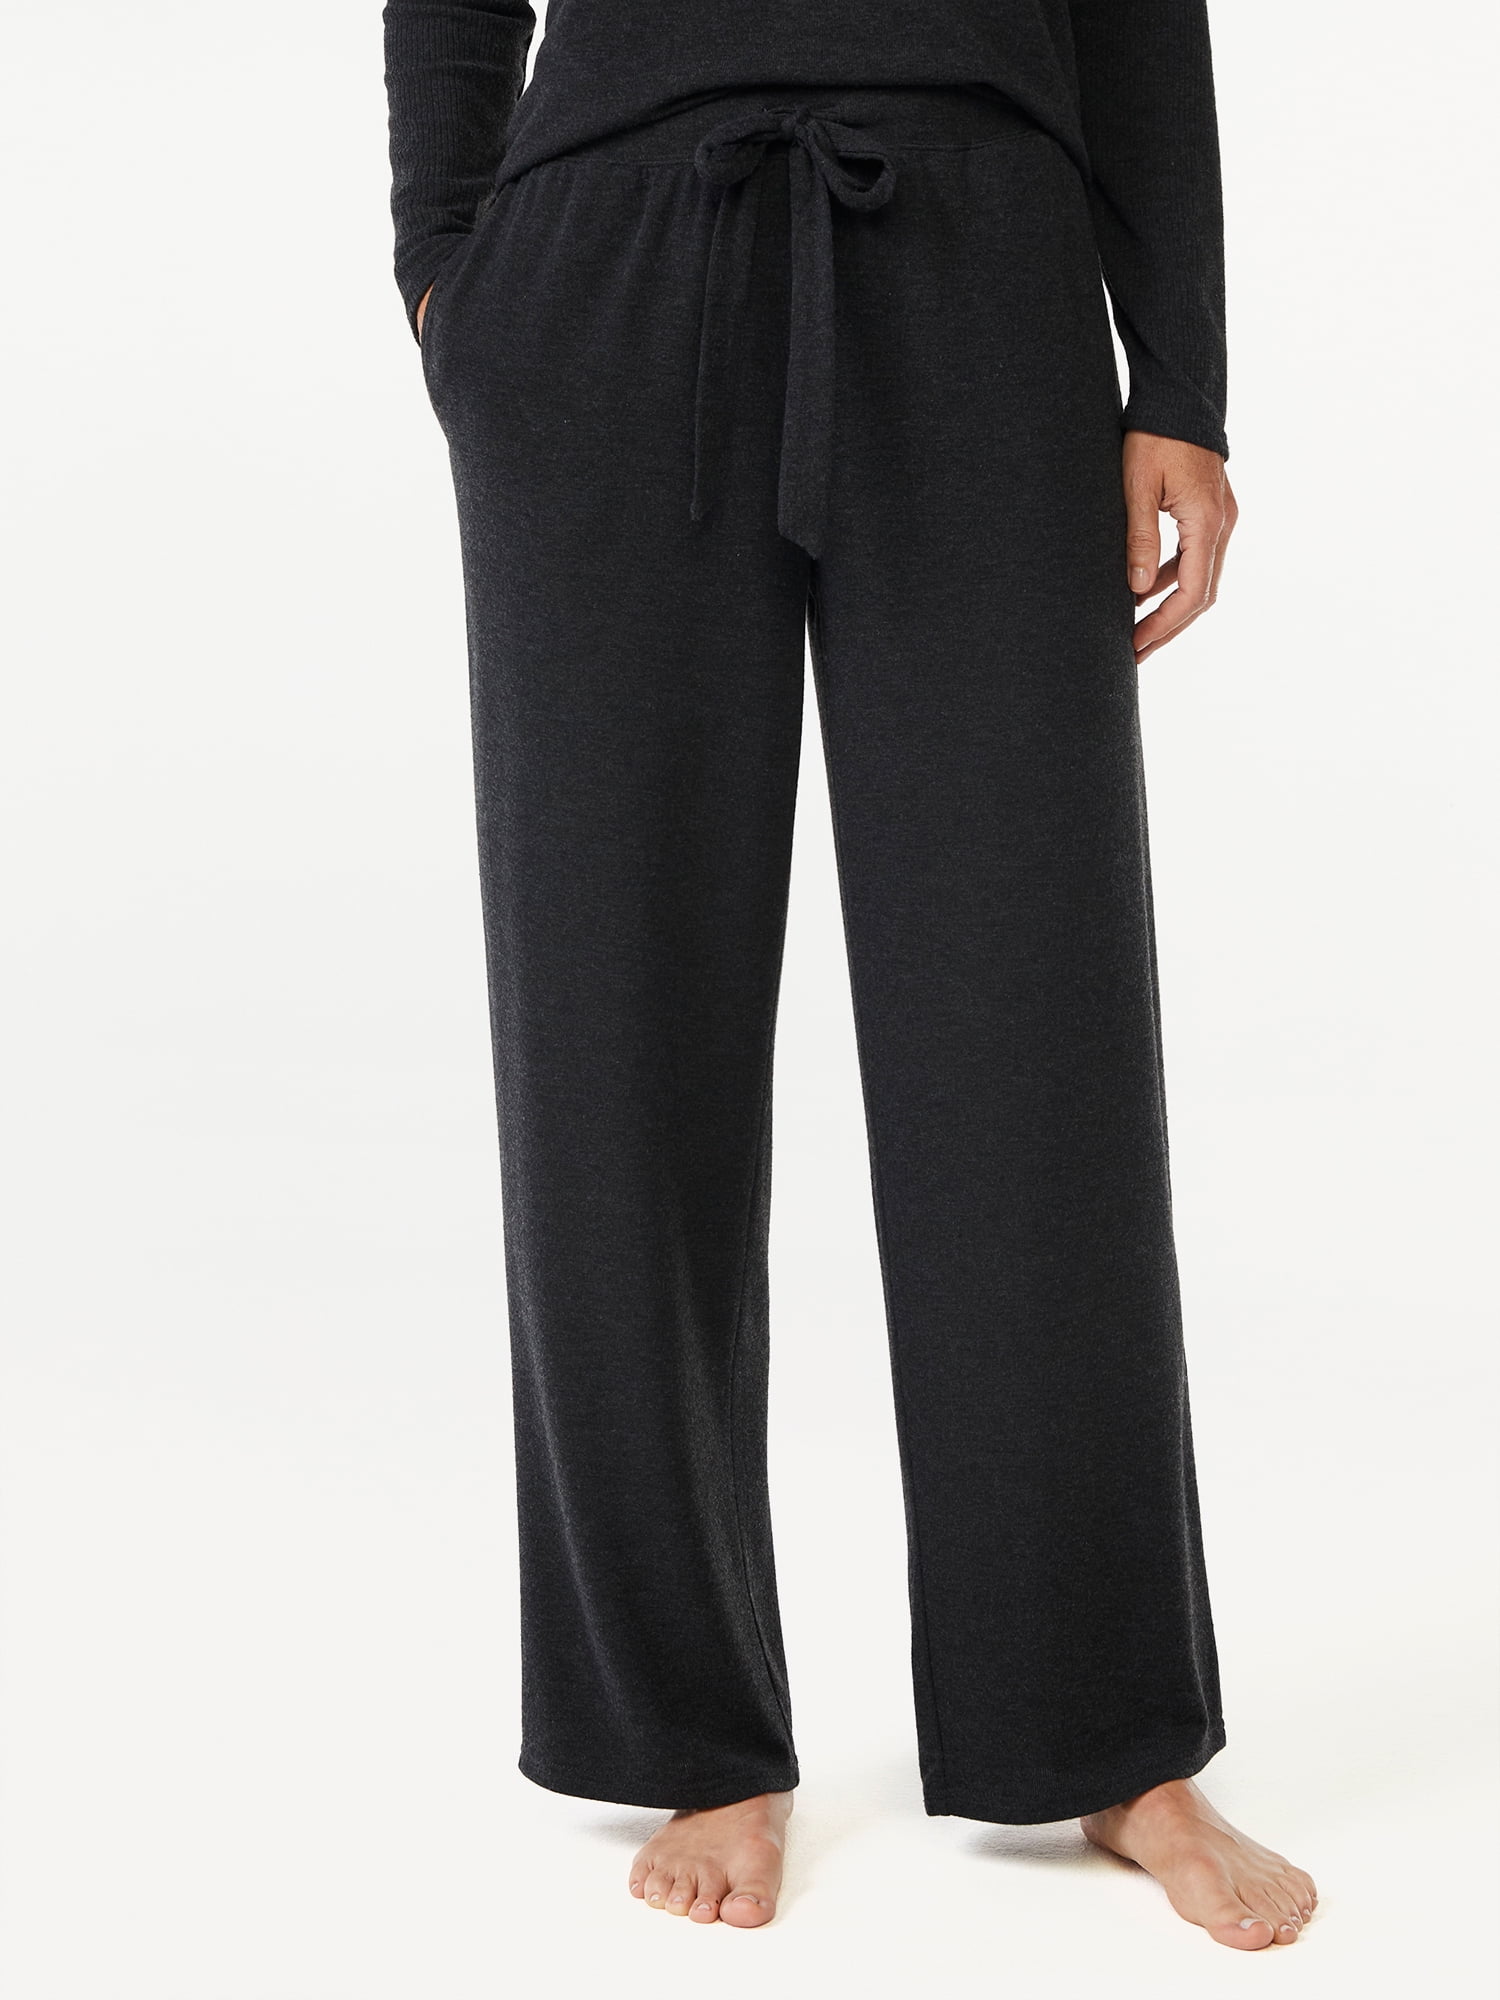 Joyspun Women\'s Hacci Knit Sizes Leg S 3X Wide Pants, Pajama to